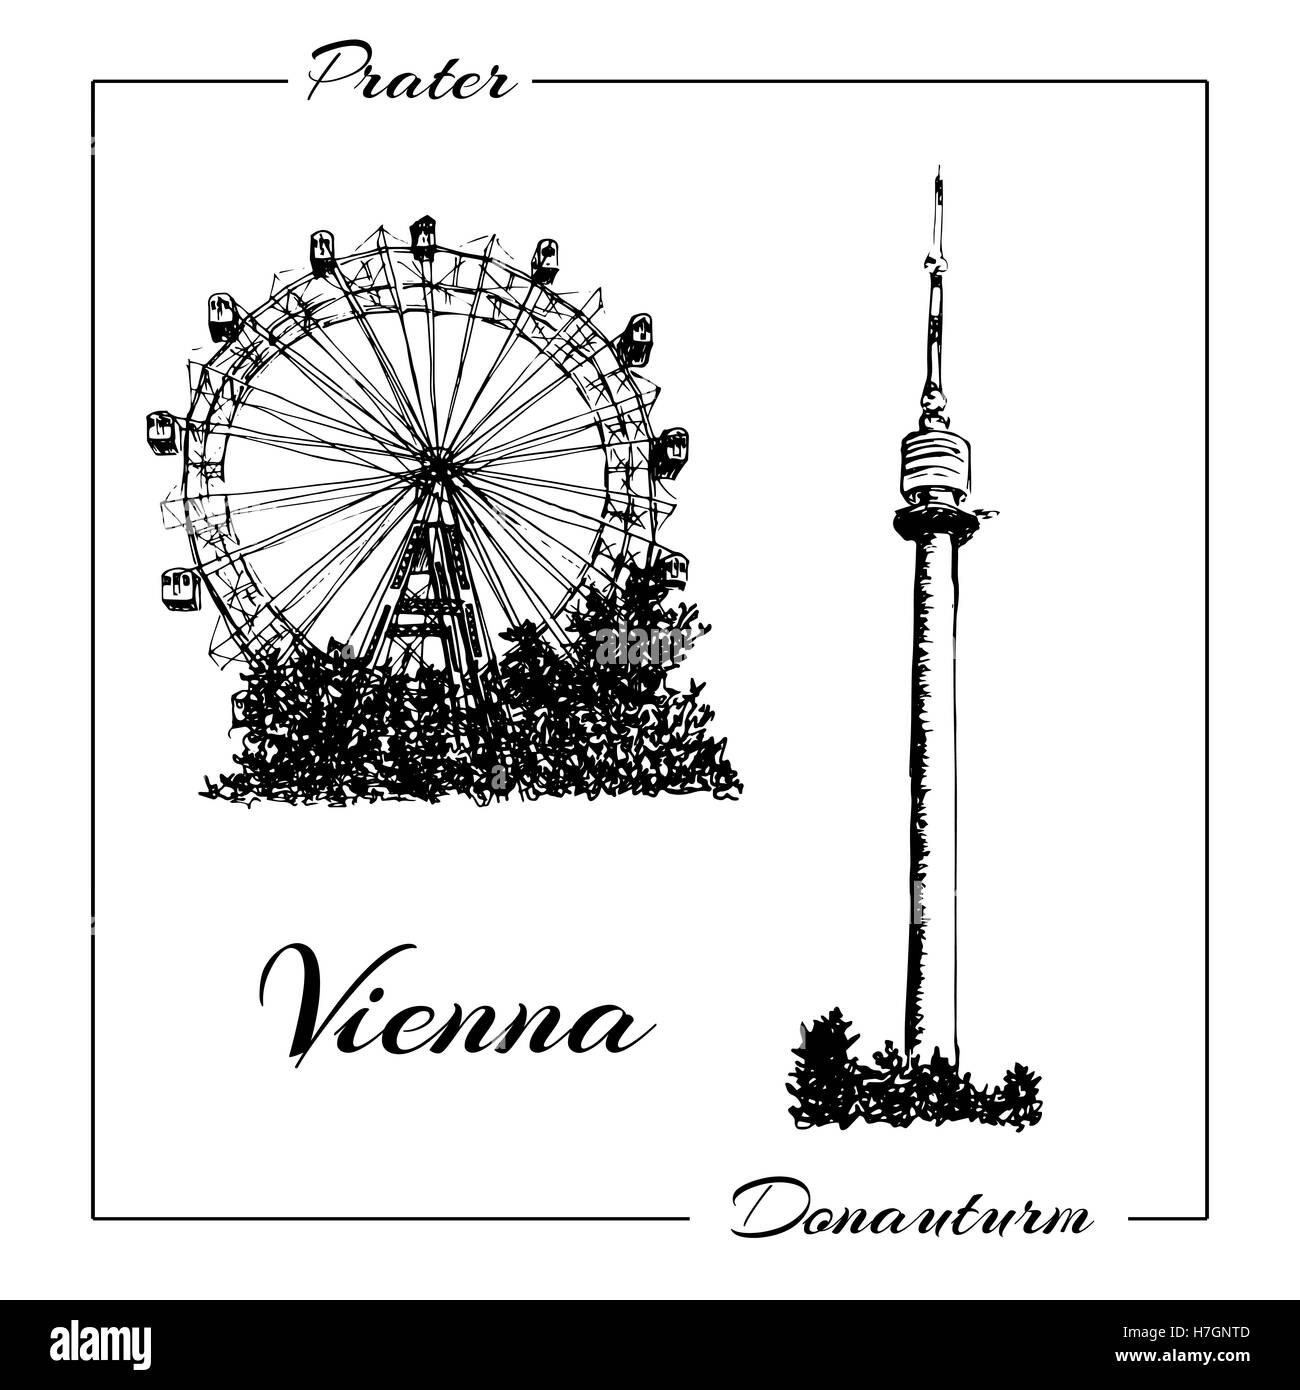 Prater di Vienna e donauturm. Mano di vettore bozzetto illustrazione. può essere usato a pubblicità, cartoline, stampe Foto Stock